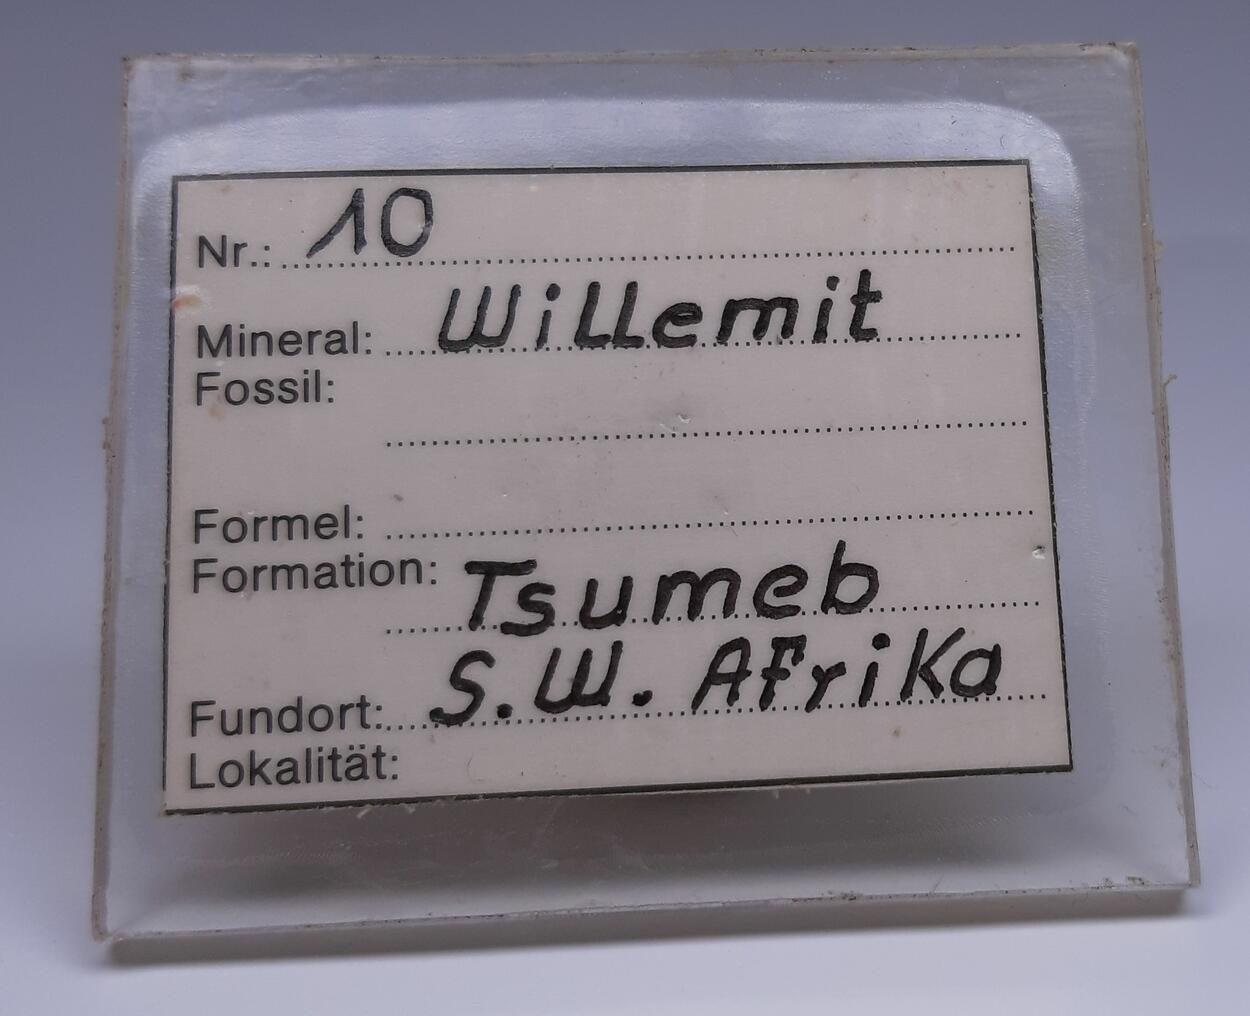 Willemite